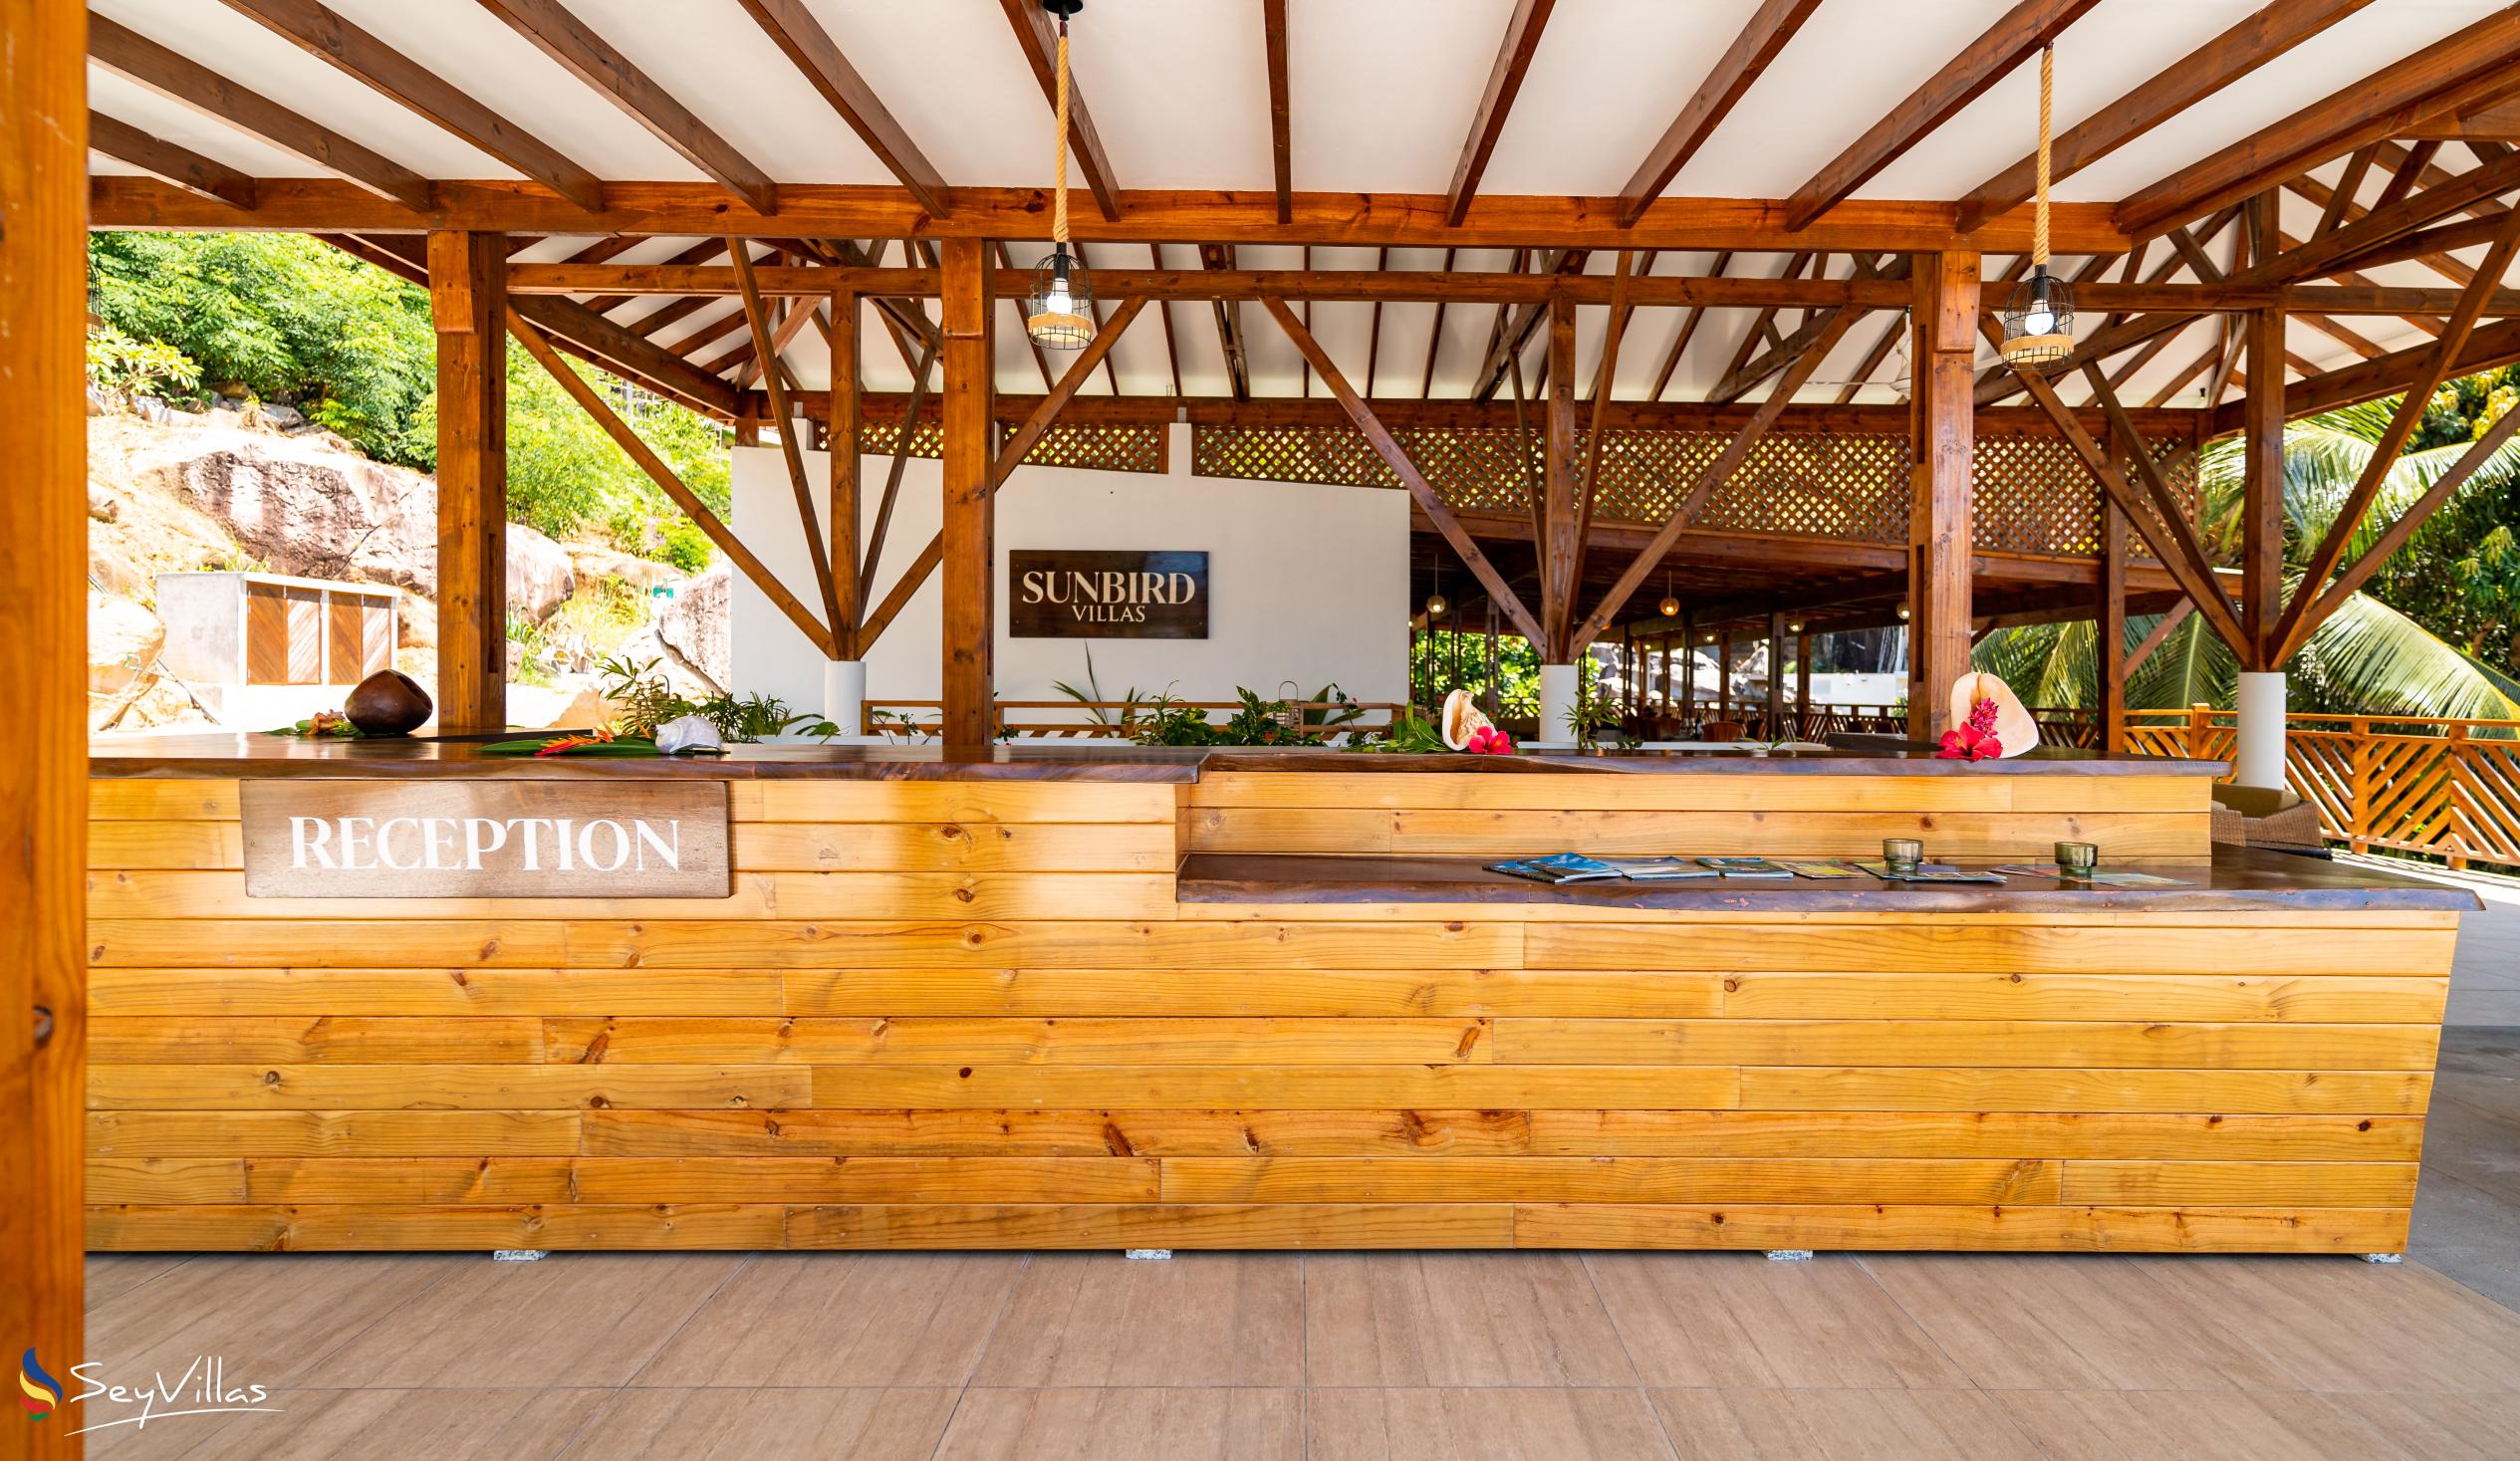 Photo 18: Sunbird Villas - Indoor area - Mahé (Seychelles)